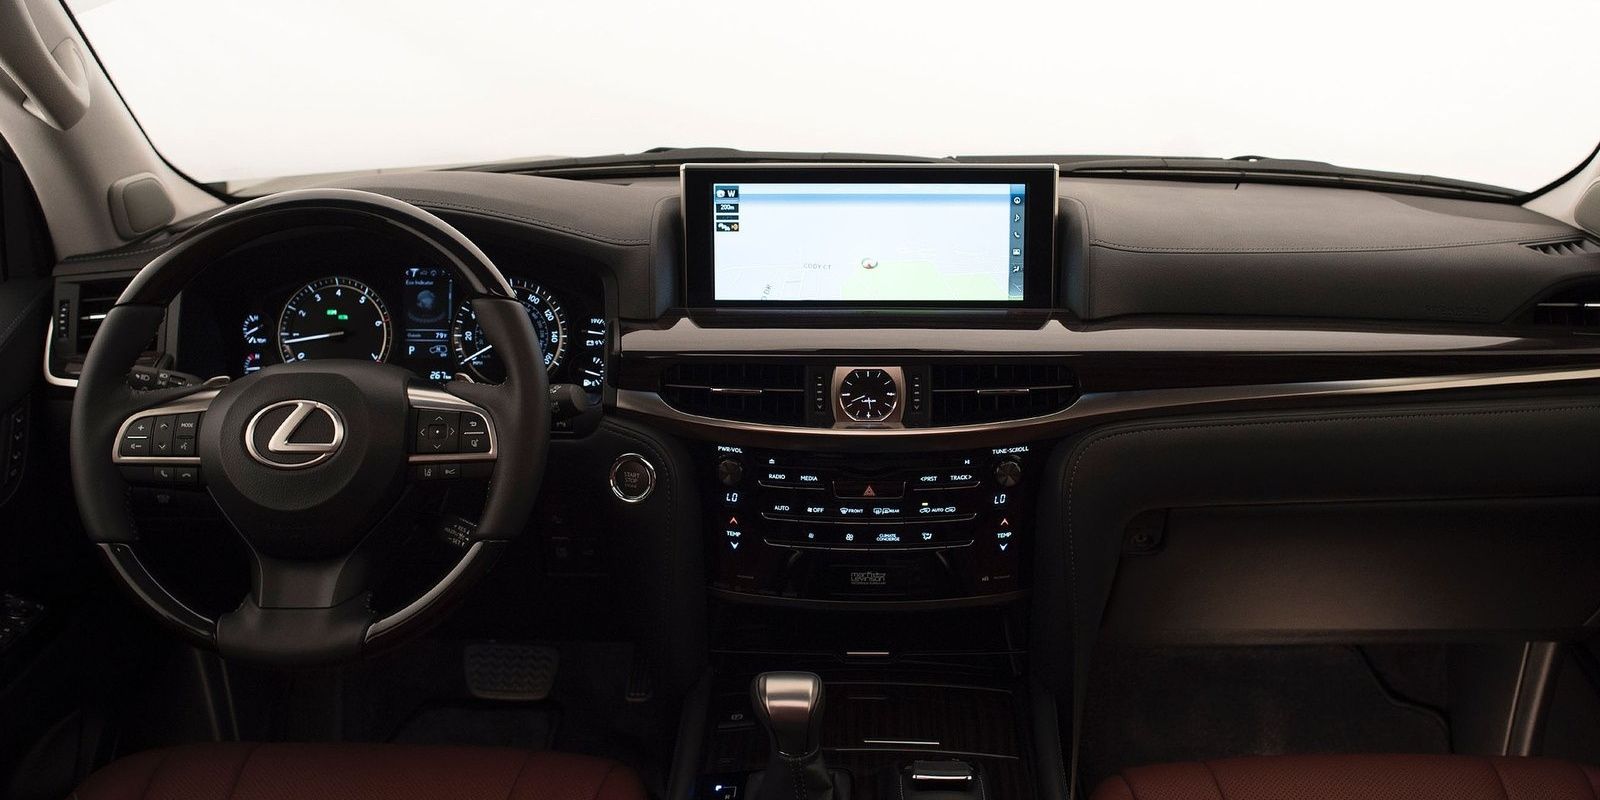 Lexus LX570 interior